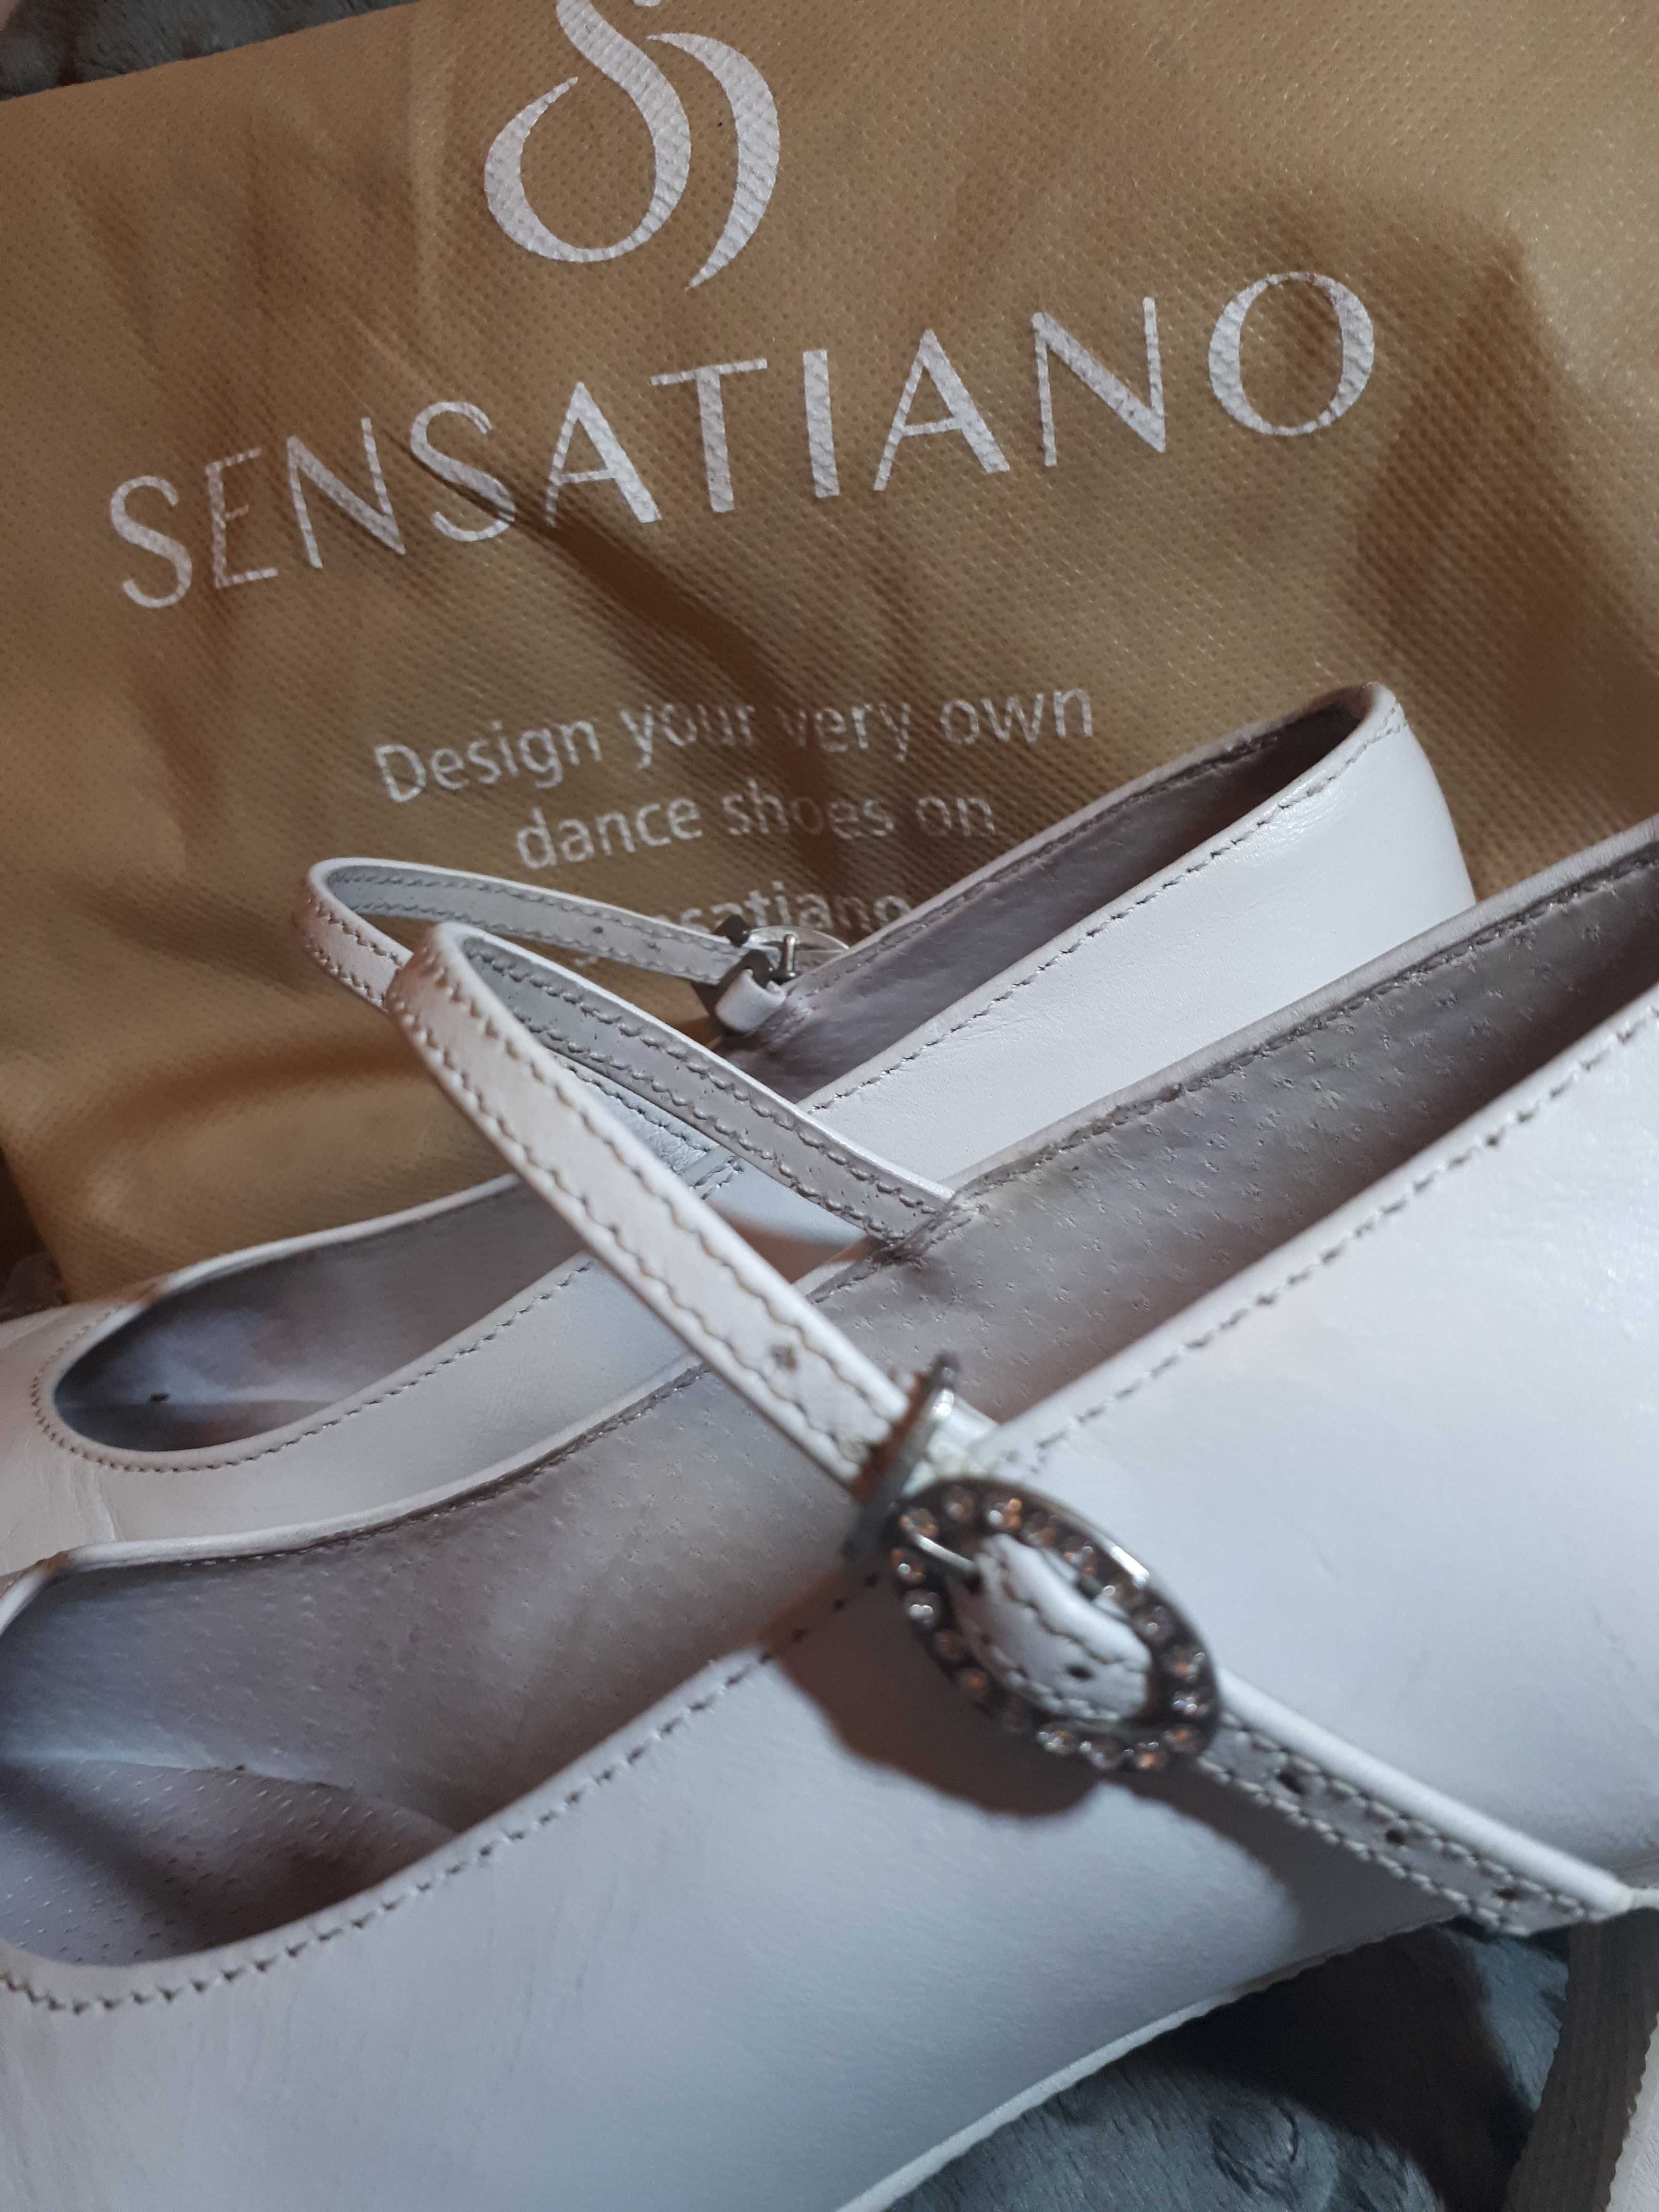 Buty ślubne, taneczne, Sensatiano. Wygodne